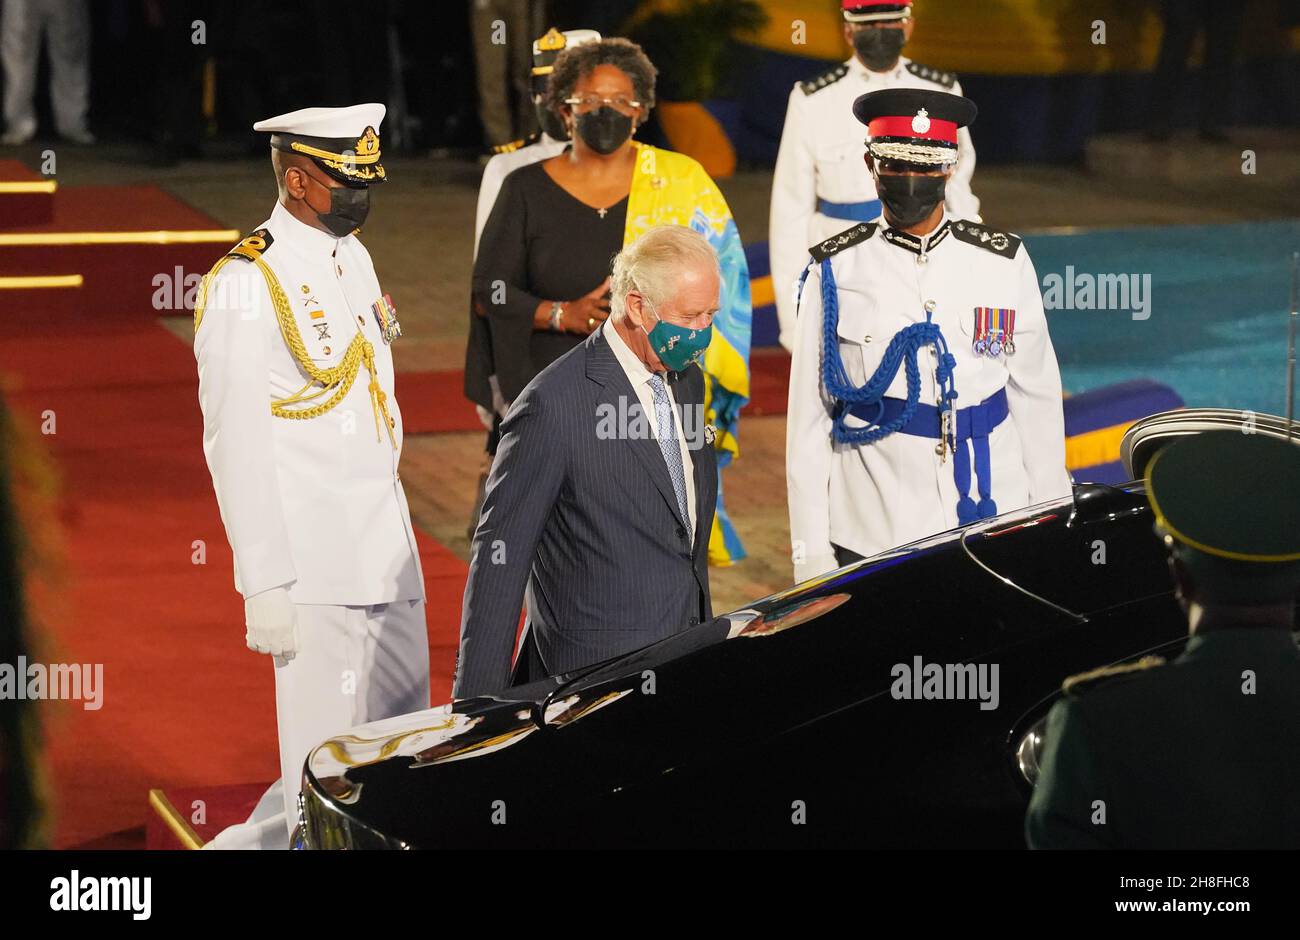 Der Prinz von Wales verlässt den Heroes Square in Bridgetown Barbados nach einer Zeremonie, um den Übergang des Landes zu einer republik innerhalb des Commonwealth zu markieren. Bilddatum: Dienstag, 30. November 2021. Stockfoto